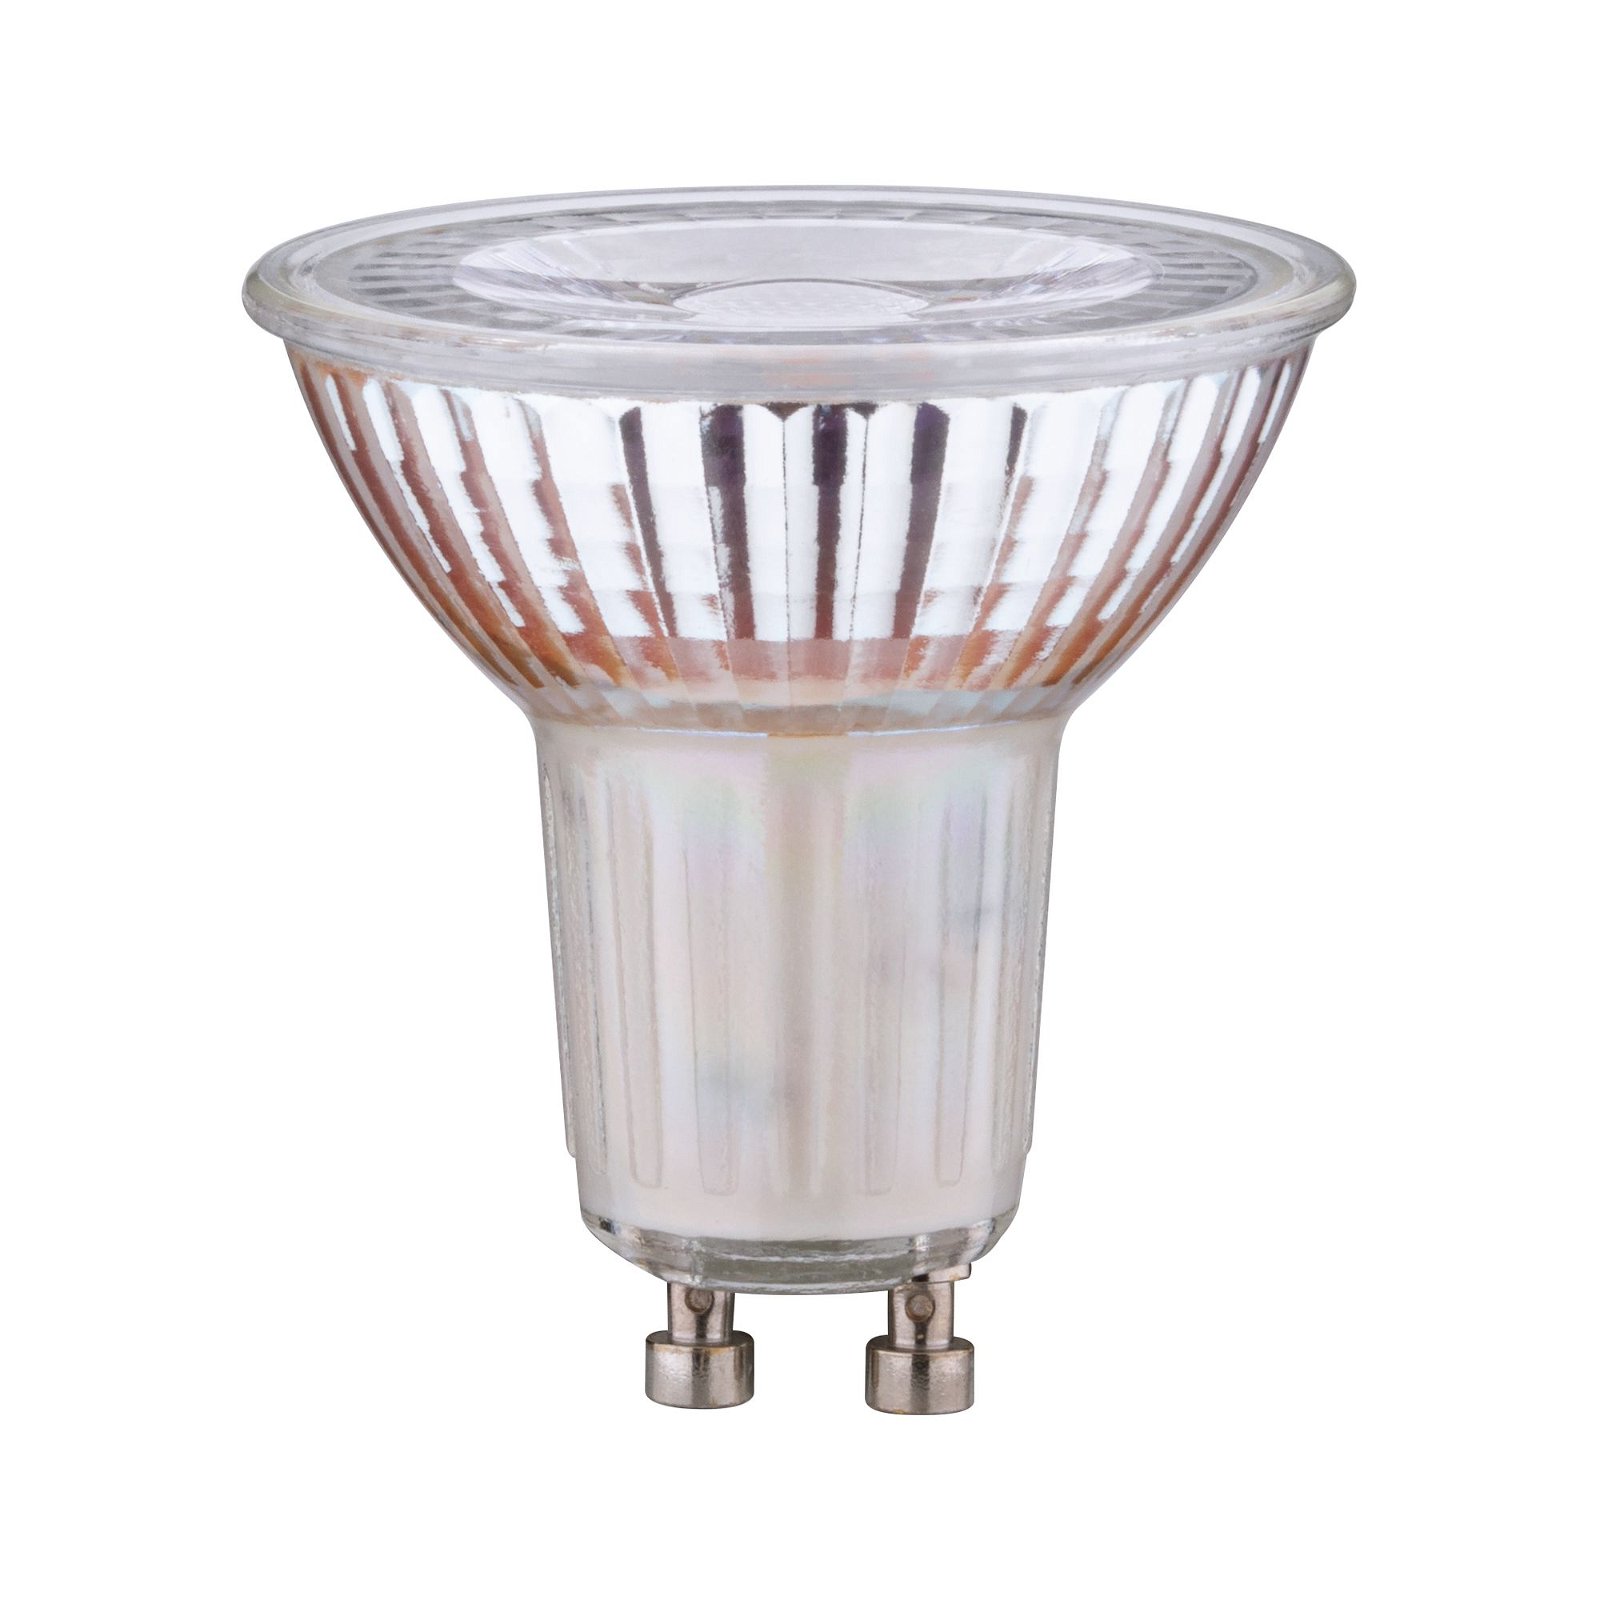 LED réflecteur en verre 5,7W GU10 blanc chaud gradable